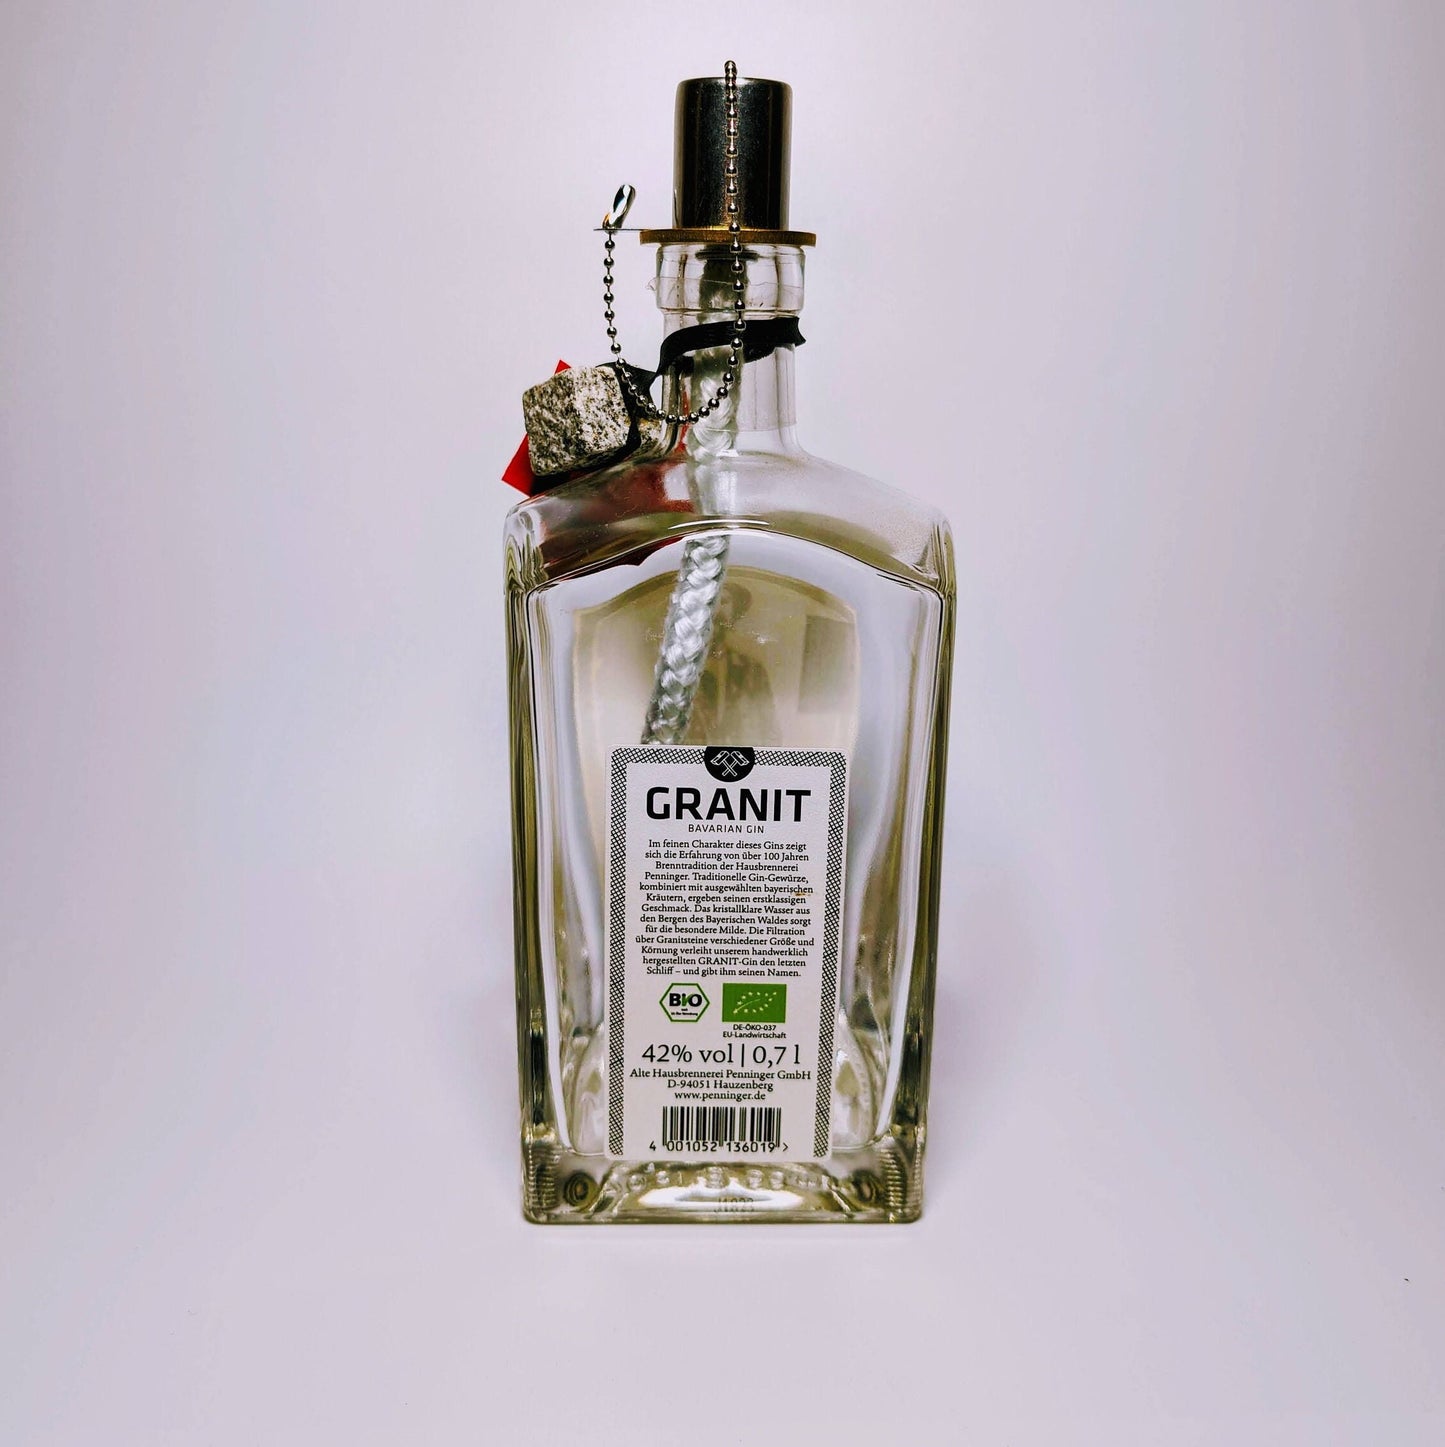 Gin Öllampe "Granit" | Handgemachte Öllampe aus Granit Gin Flaschen | Upcycling | Handgefertigt | Individuell | Geschenk | Deko | H:24cm